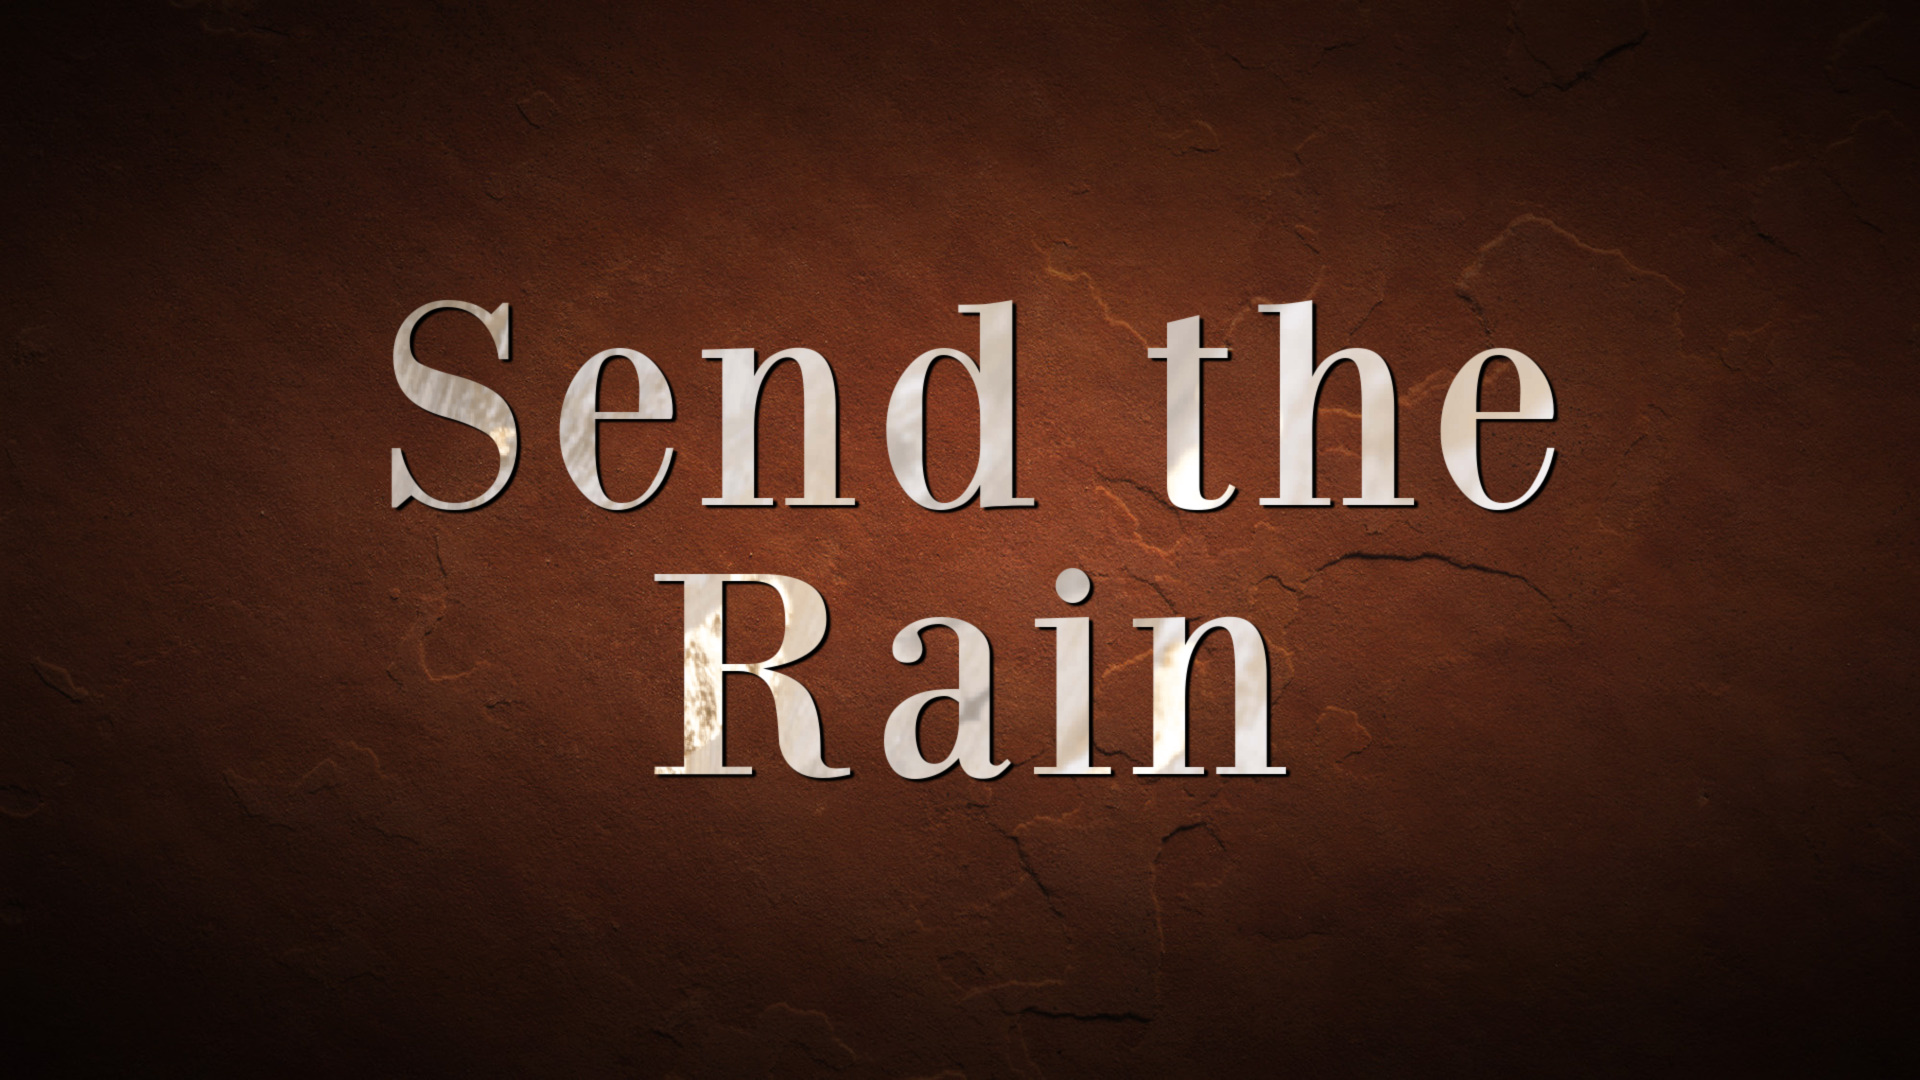 Send The Rain